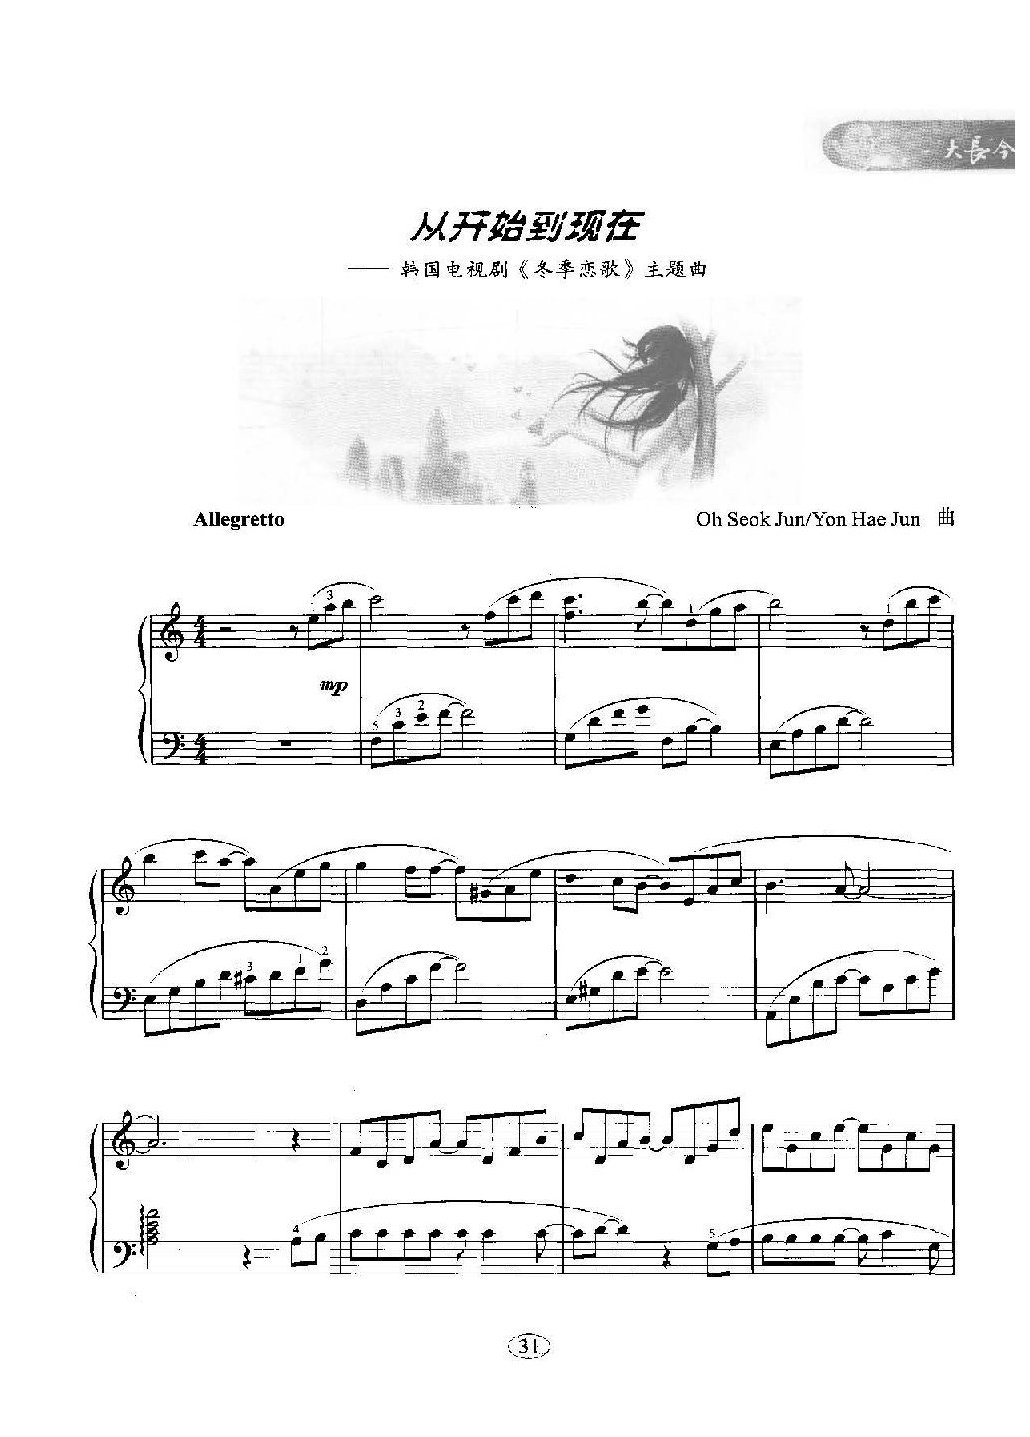 韩日剧音乐钢琴曲：从开始到现在 韩国电视剧《冬季恋歌》主题曲